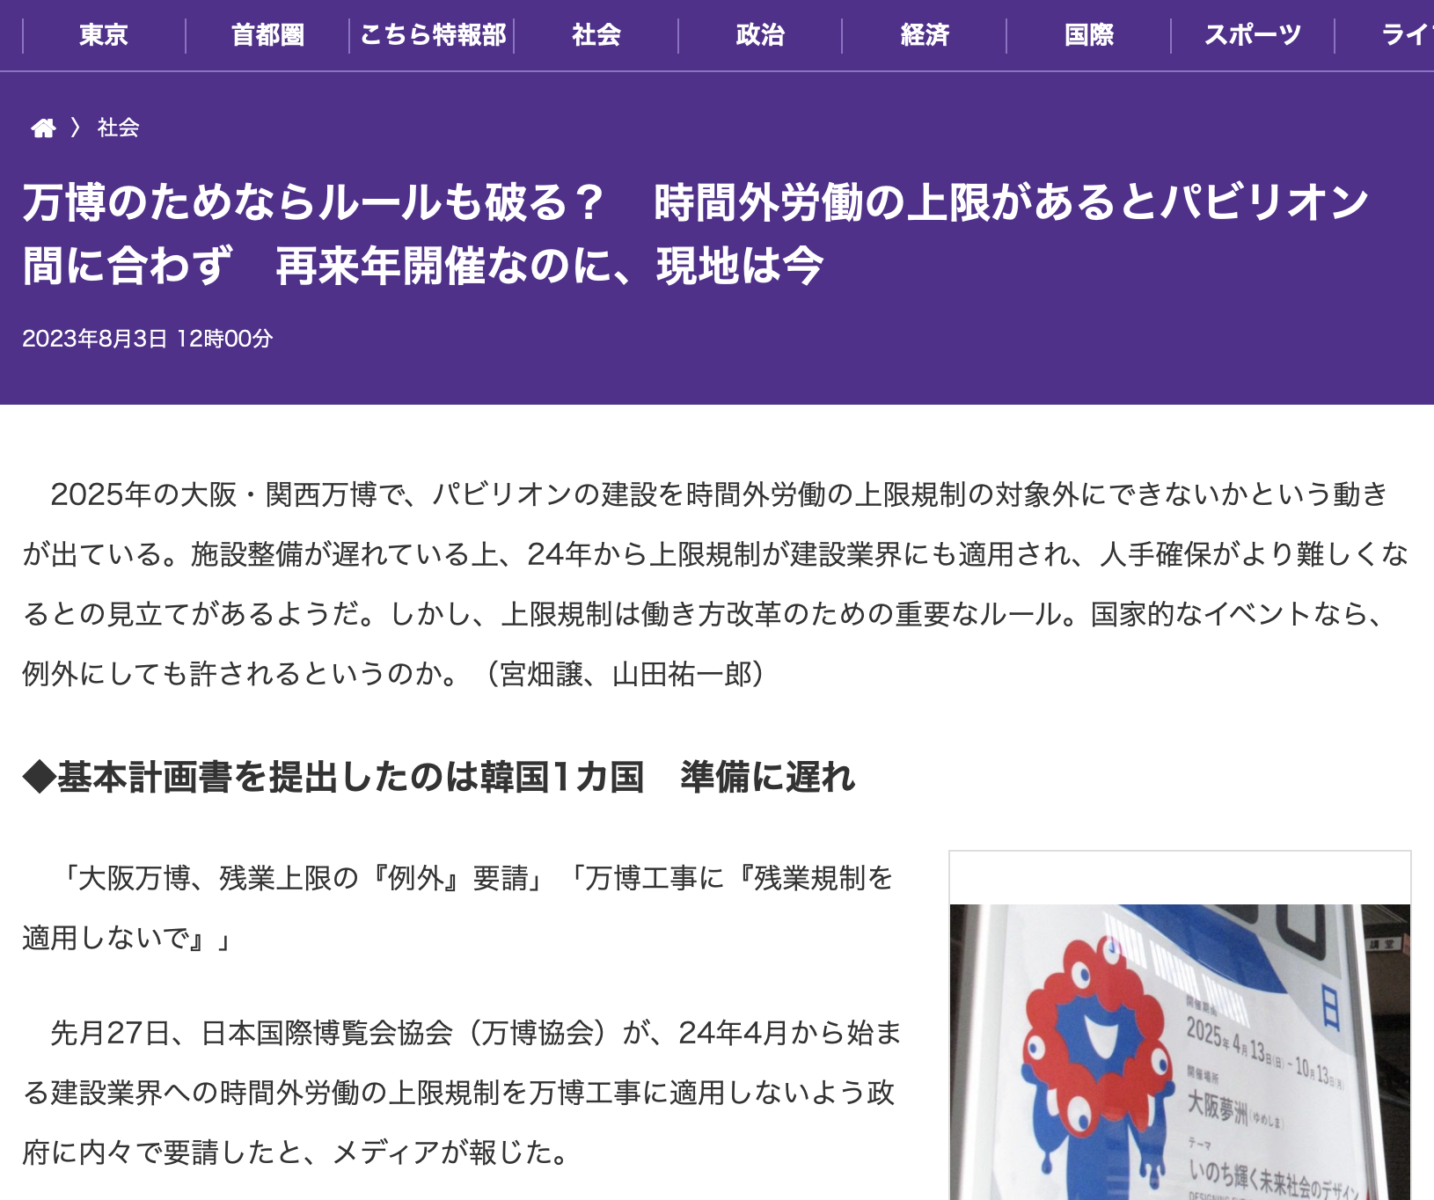 2025年の大阪・関西万博で、パビリオンの建設を時間外労働の上限規制の対象外にできないかという動きについての東京新聞記事